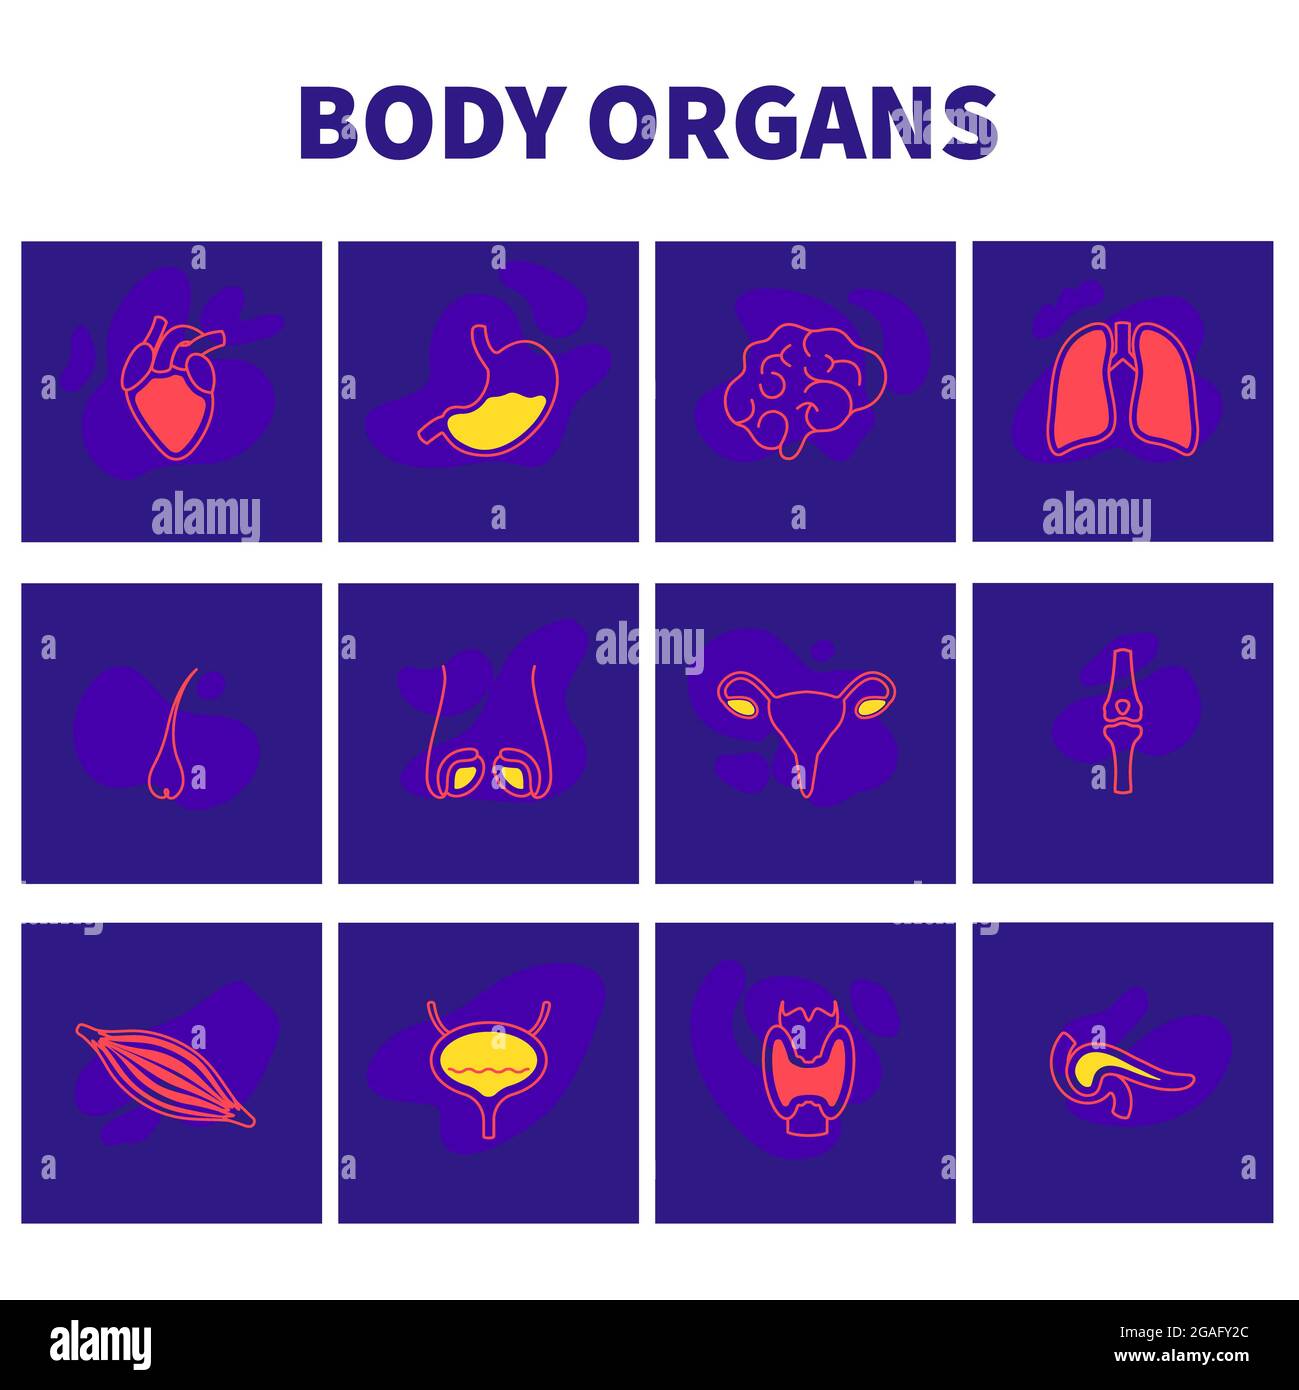 Organi del corpo umano, illustrazione concettuale Foto Stock